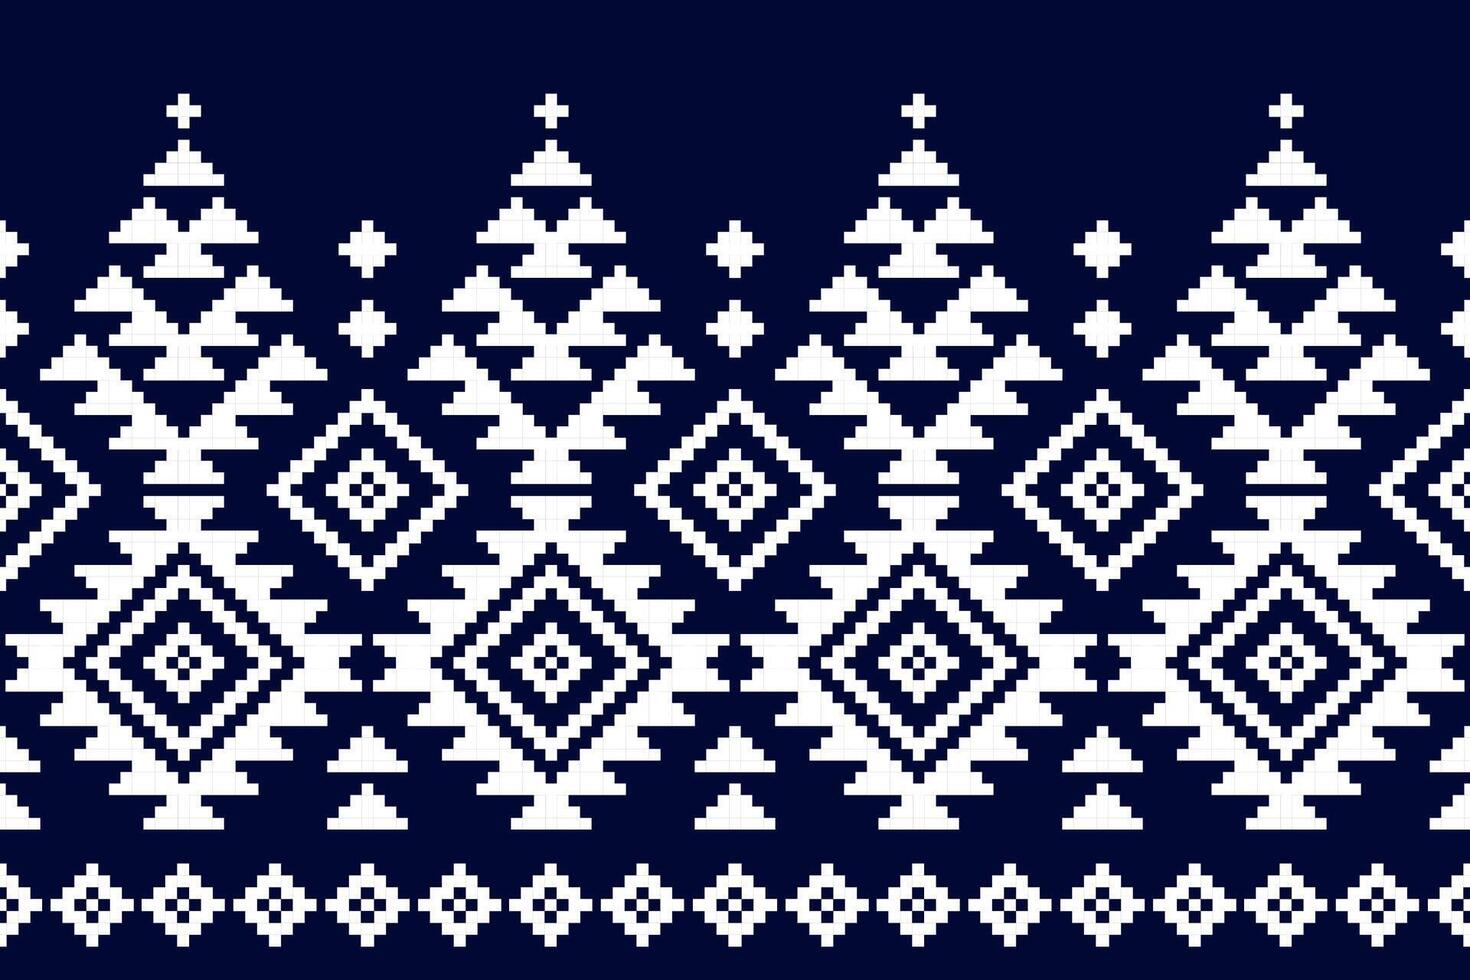 tissu de style mexicain. motif géométrique sans couture ethnique en tribal. impression d'ornement d'art aztèque. vecteur